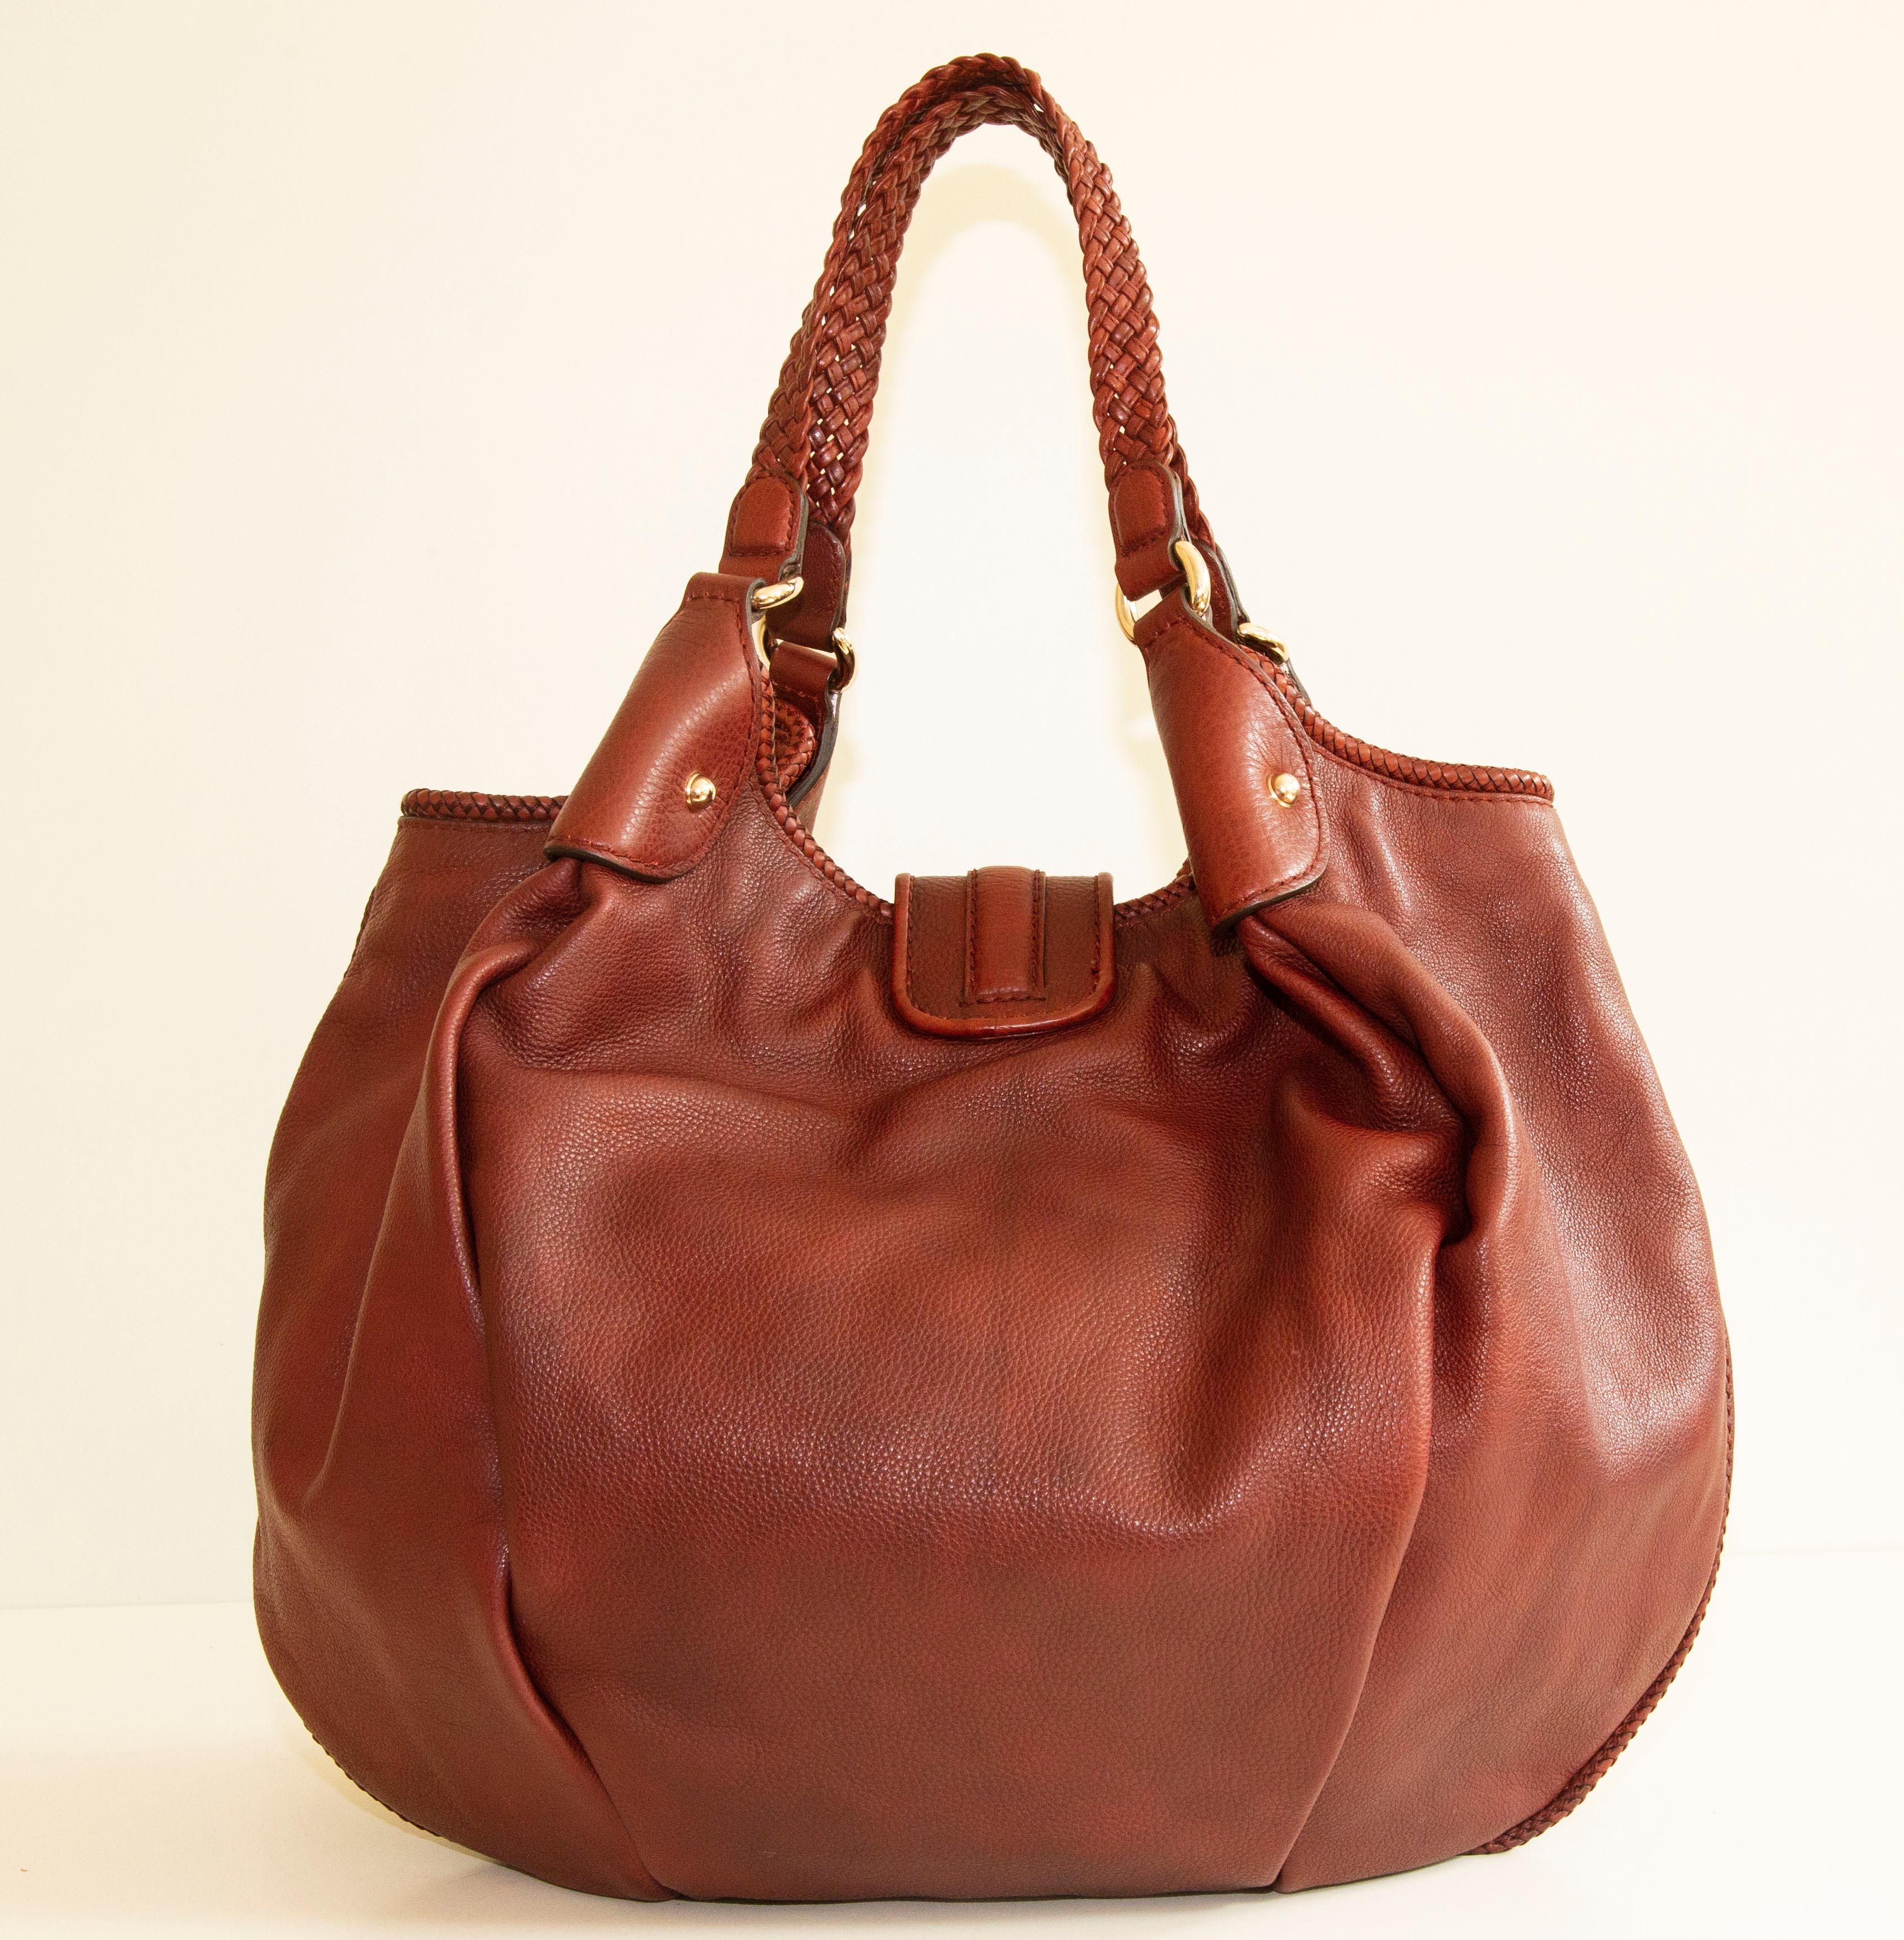 Eine authentische Gucci Marrakech Hobo-Umhängetasche. Die Tasche ist aus erdrotem Leder und hat goldfarbene Beschläge. Das Innere ist mit beigem Stoff ausgekleidet und verfügt über drei Seitentaschen, eine Reißverschlusstasche und zwei Steckfächer.